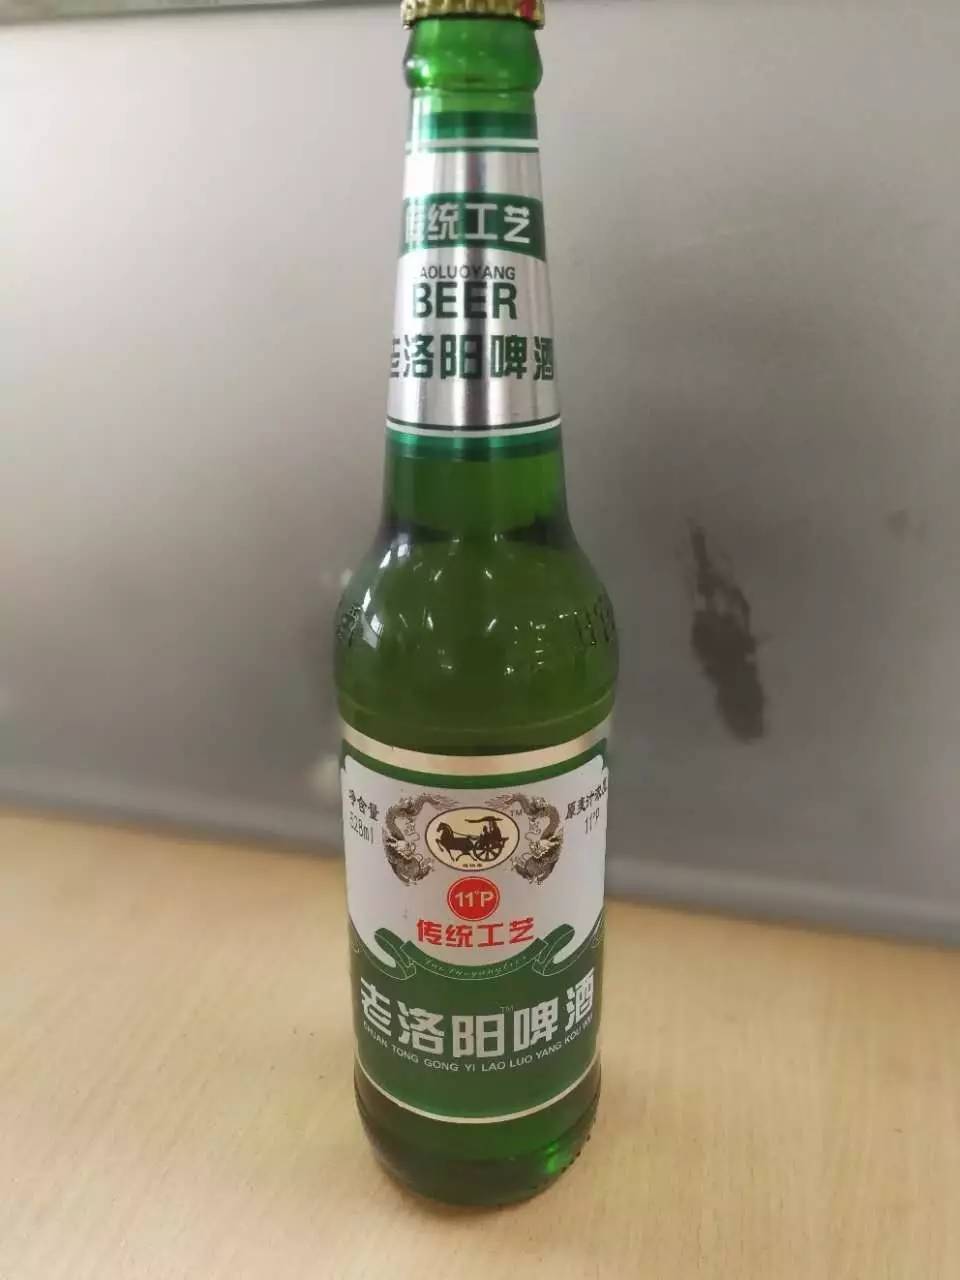 洛阳宫啤酒重出江湖实际是老瓶装新酒产自这里